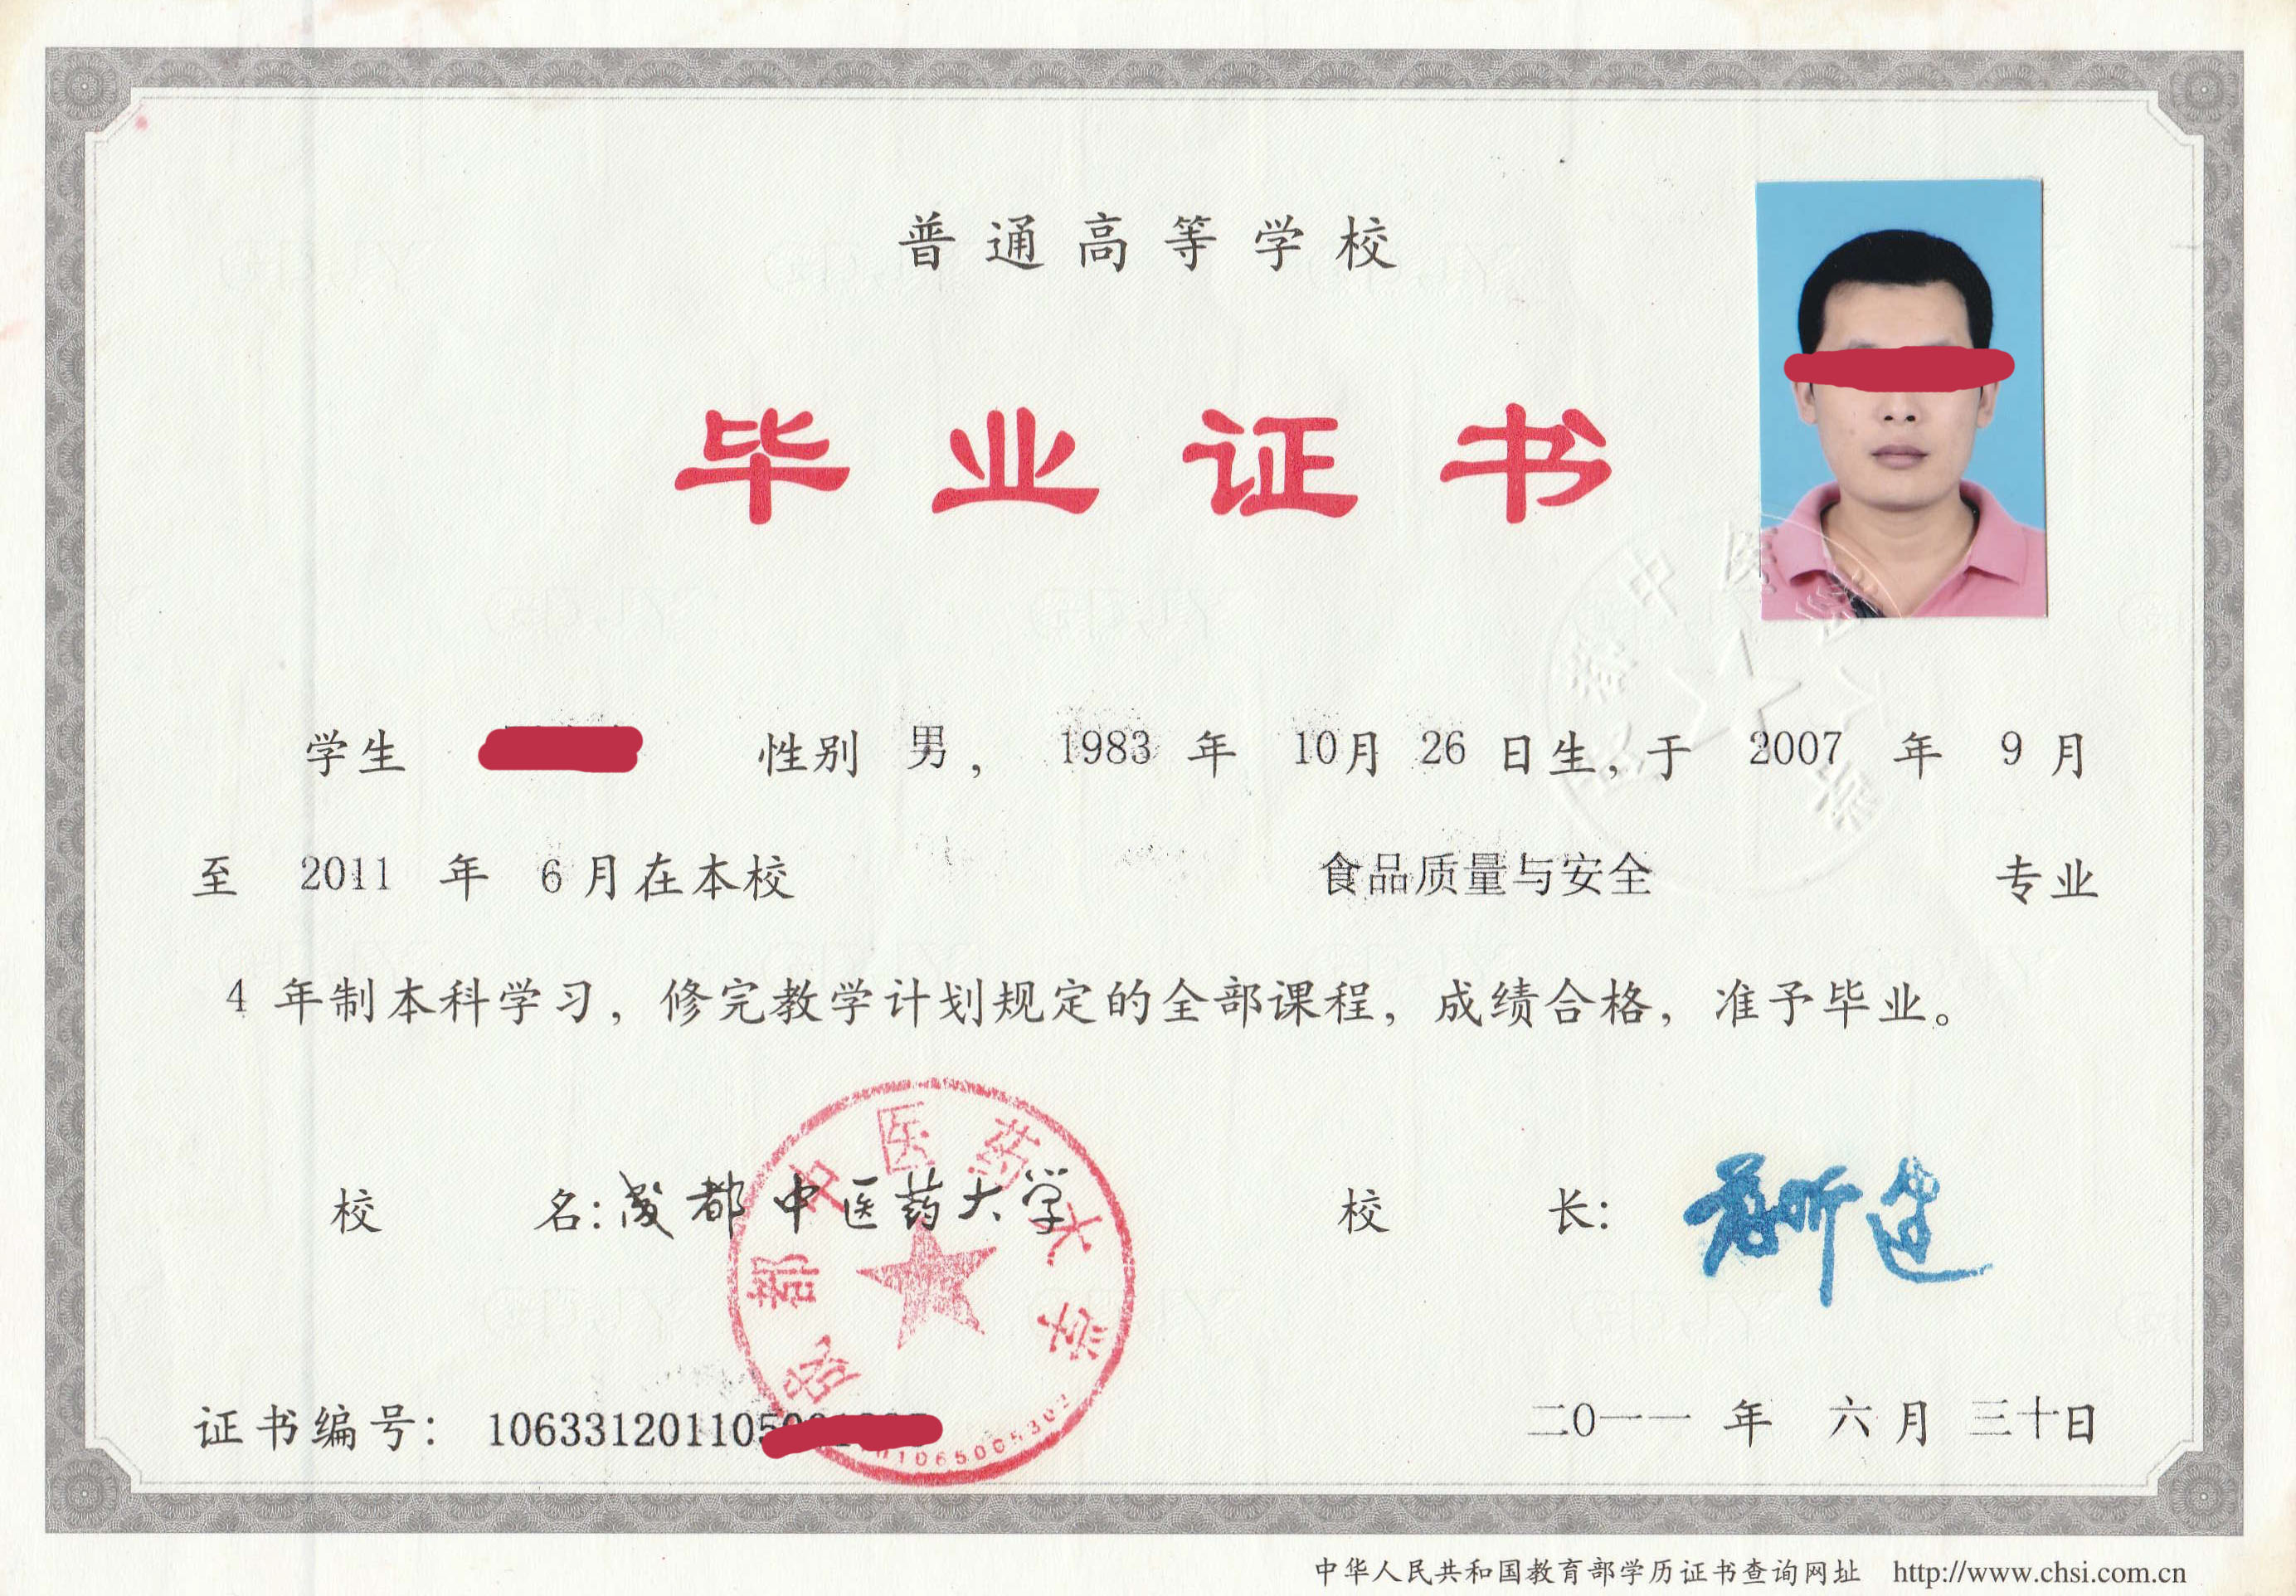 上海托普信息技术学院毕业证编号